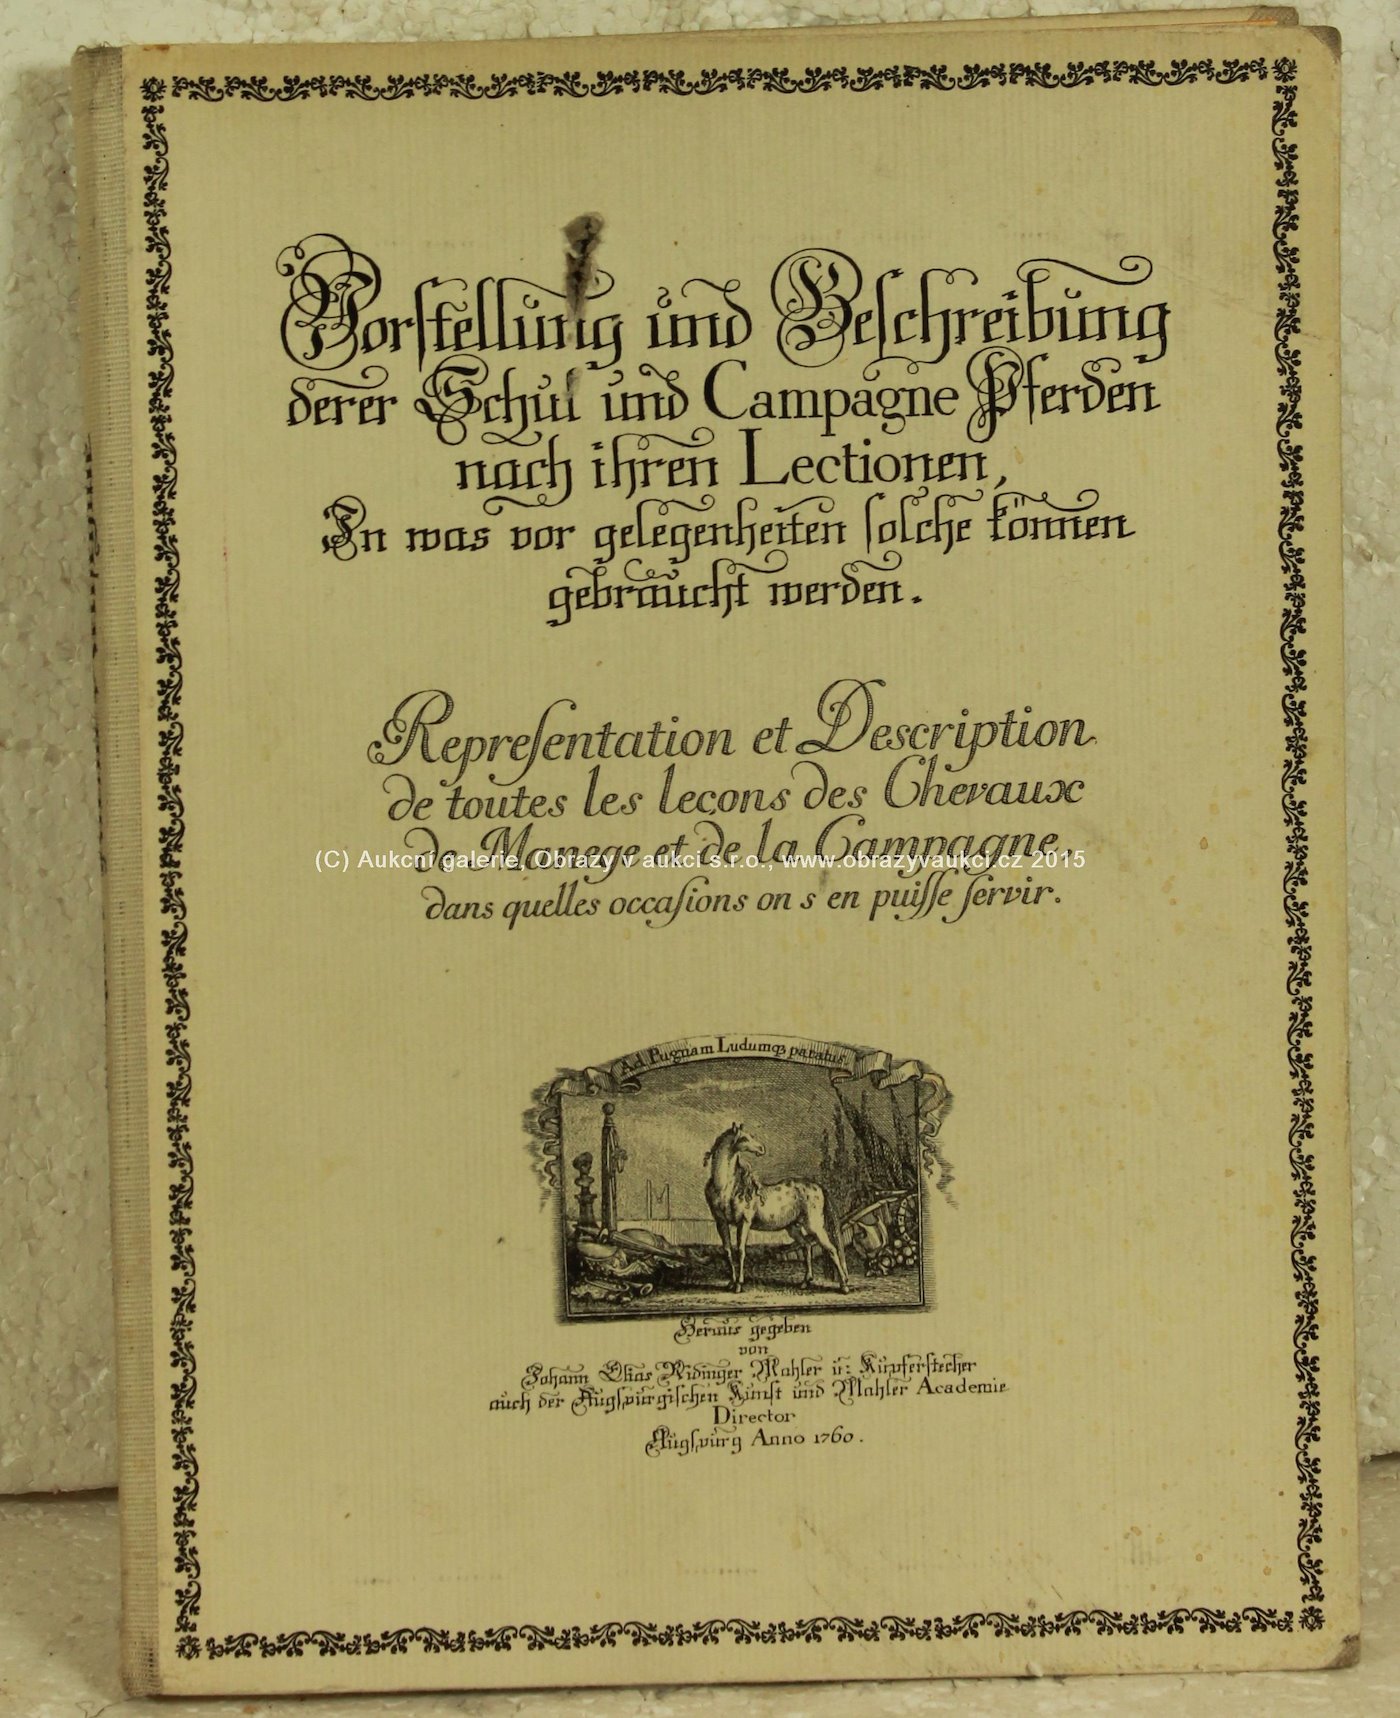 Johann Elias Ridinger - Vorstellung und Beschreibung derer Schul und Campagne Pferden nach ihren Lectionen